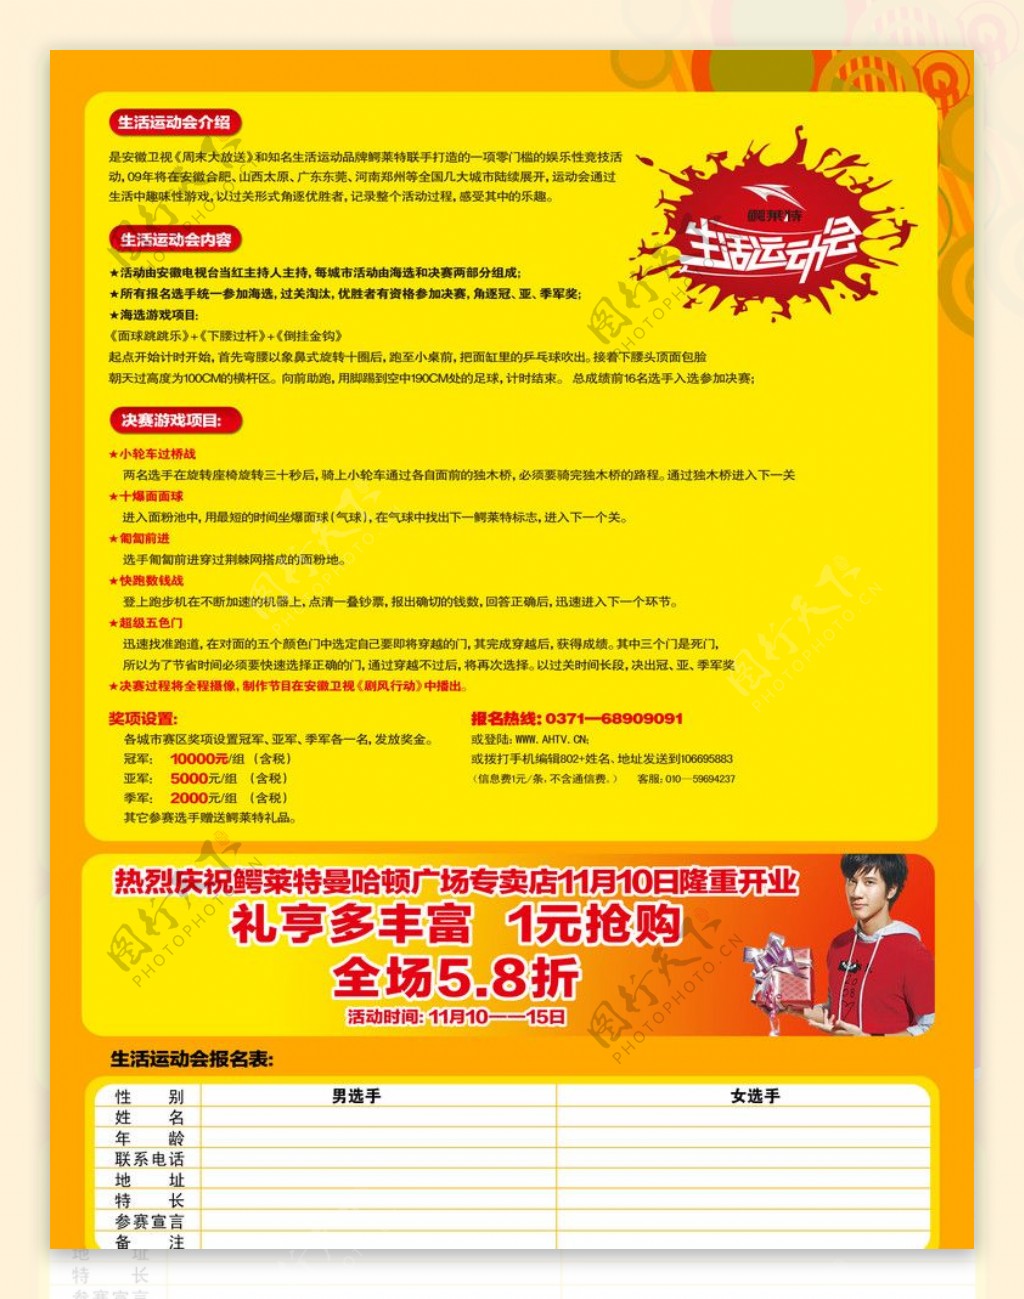 鳄莱特生活运动会郑州站DM单背面图片